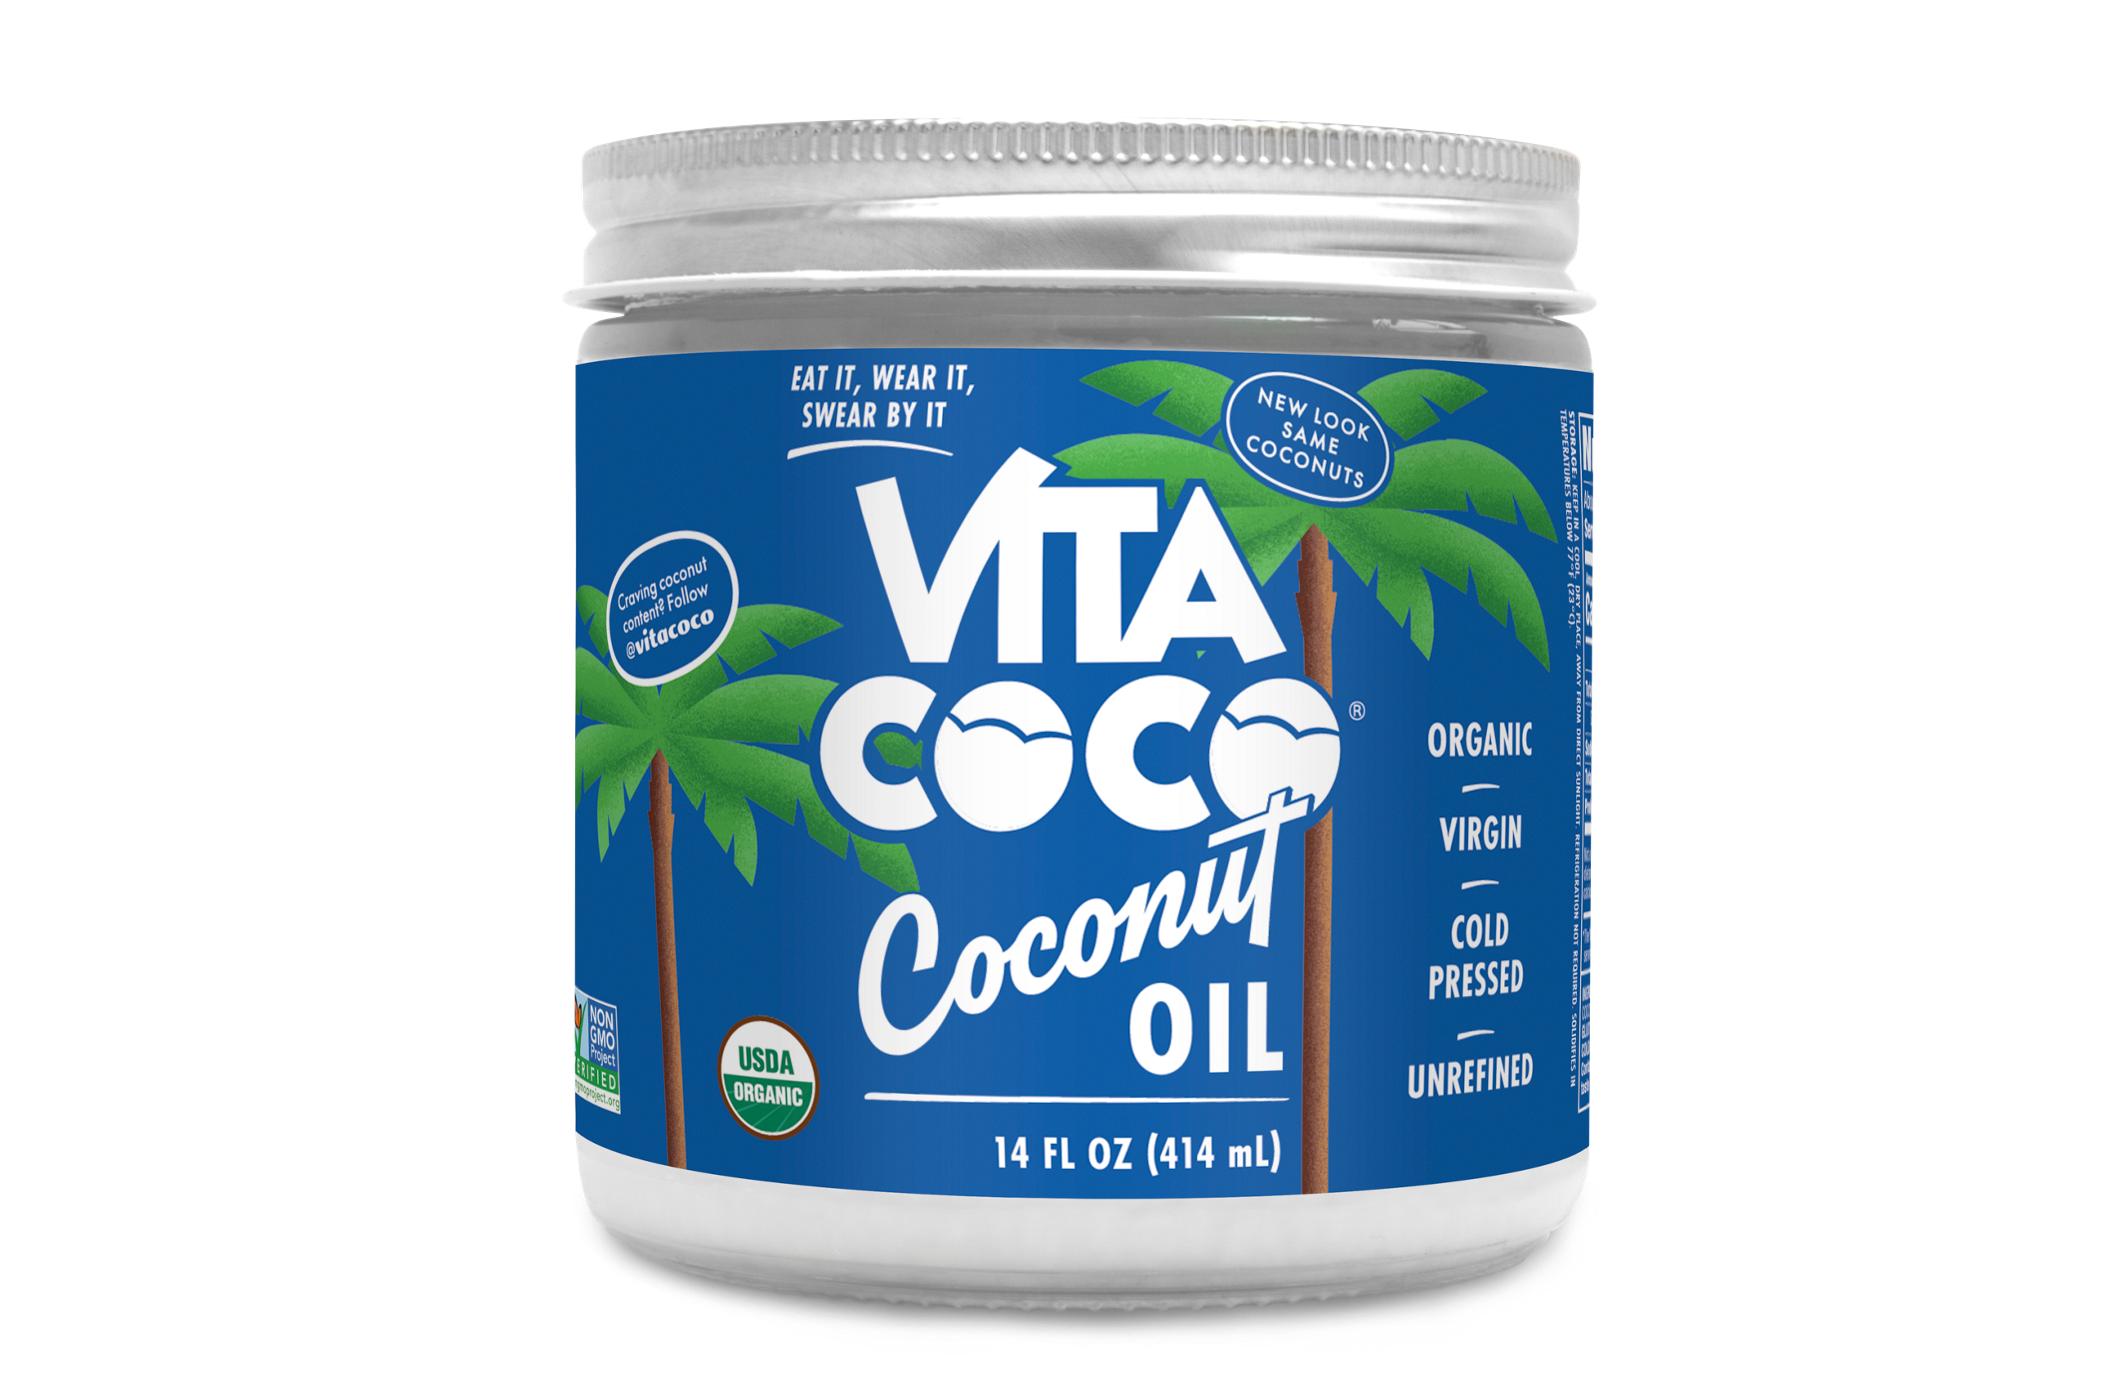 Vita Coco Coconut Oil; image 1 of 2